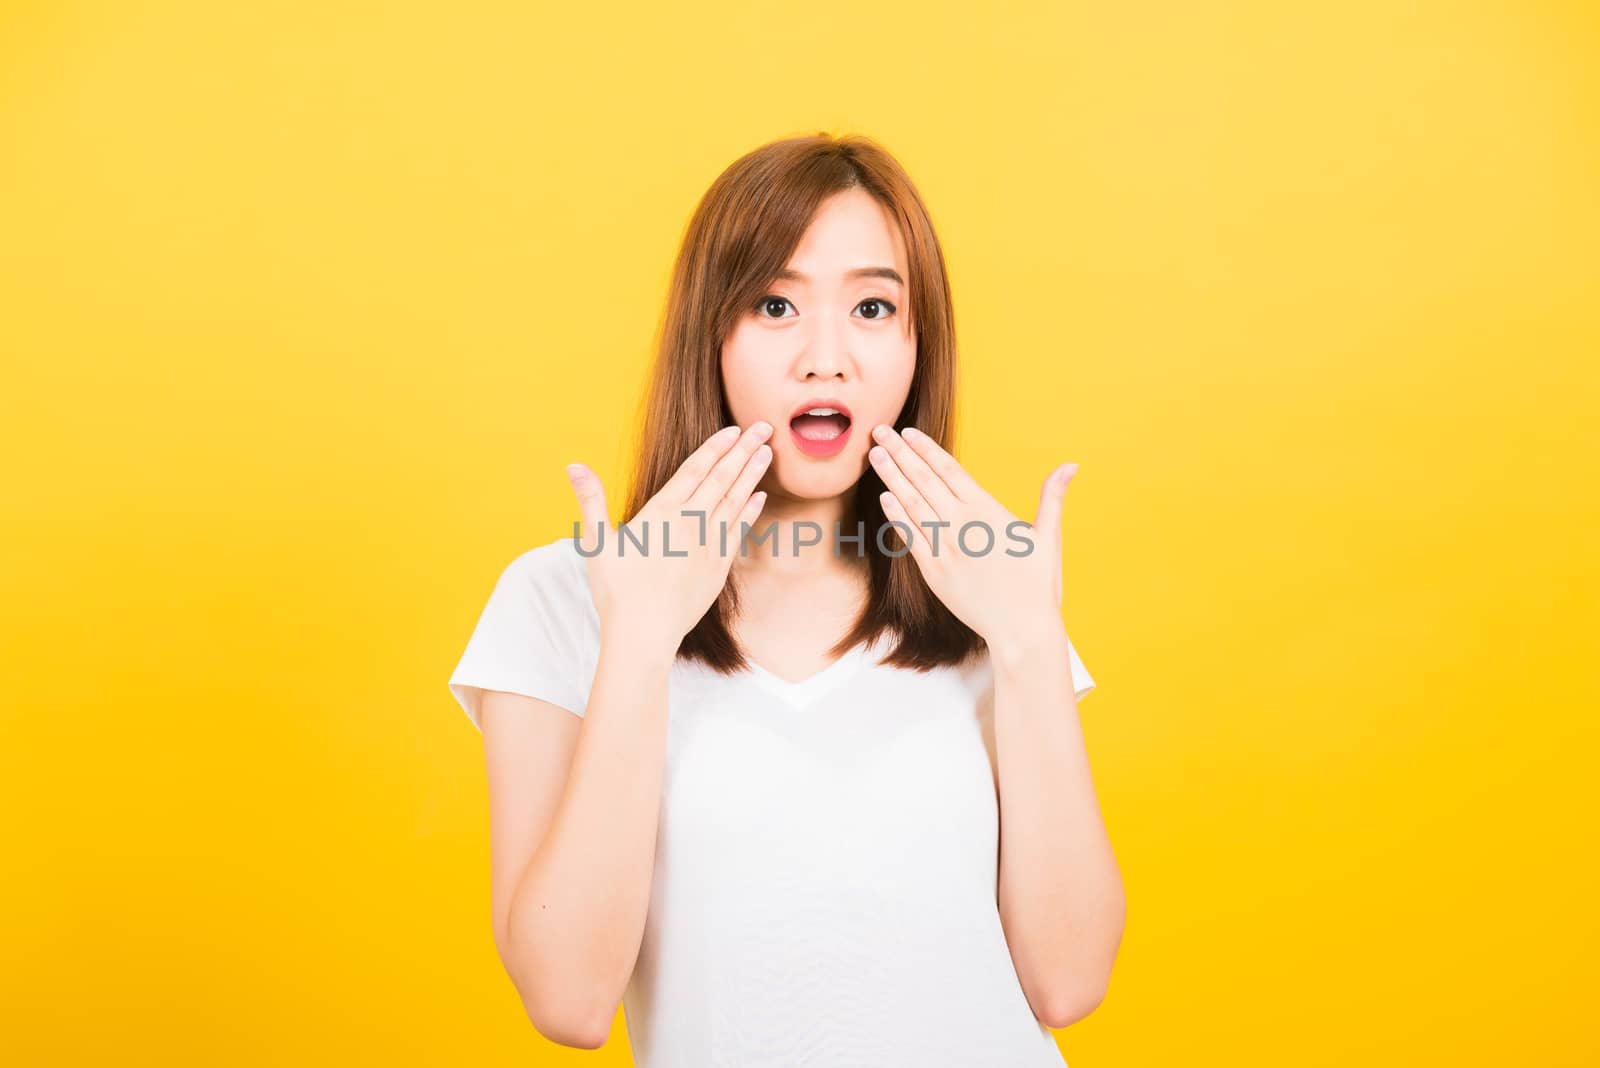 woman teen standing amazed, shocked afraid wide open mouth eyes  by Sorapop